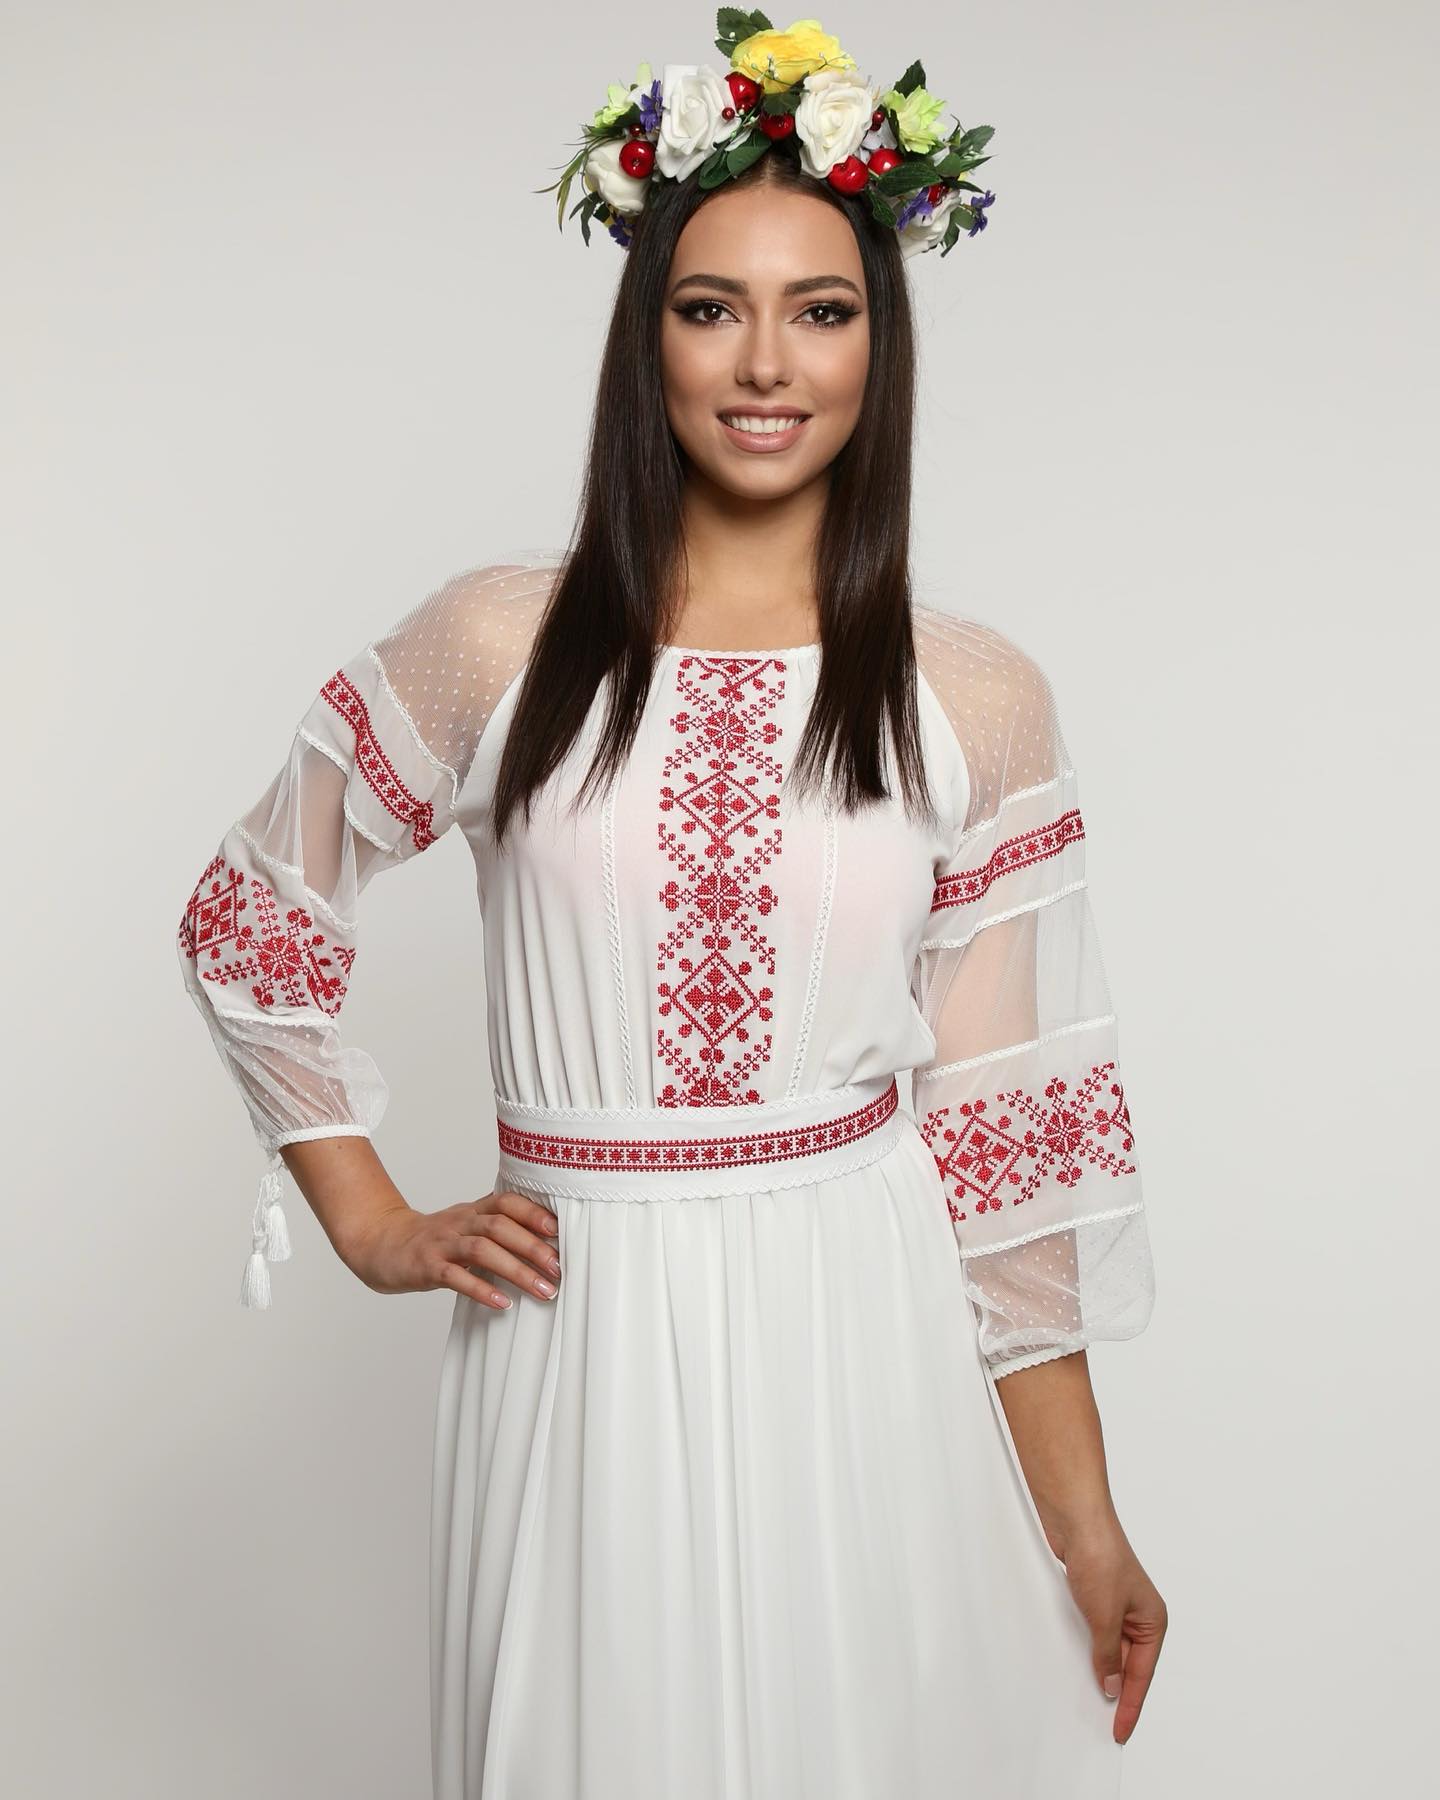 FOTO O tânără din Chișinău va reprezenta Moldova la concursul de frumusețe Miss International 2023. Cine este Djulieta Calalb